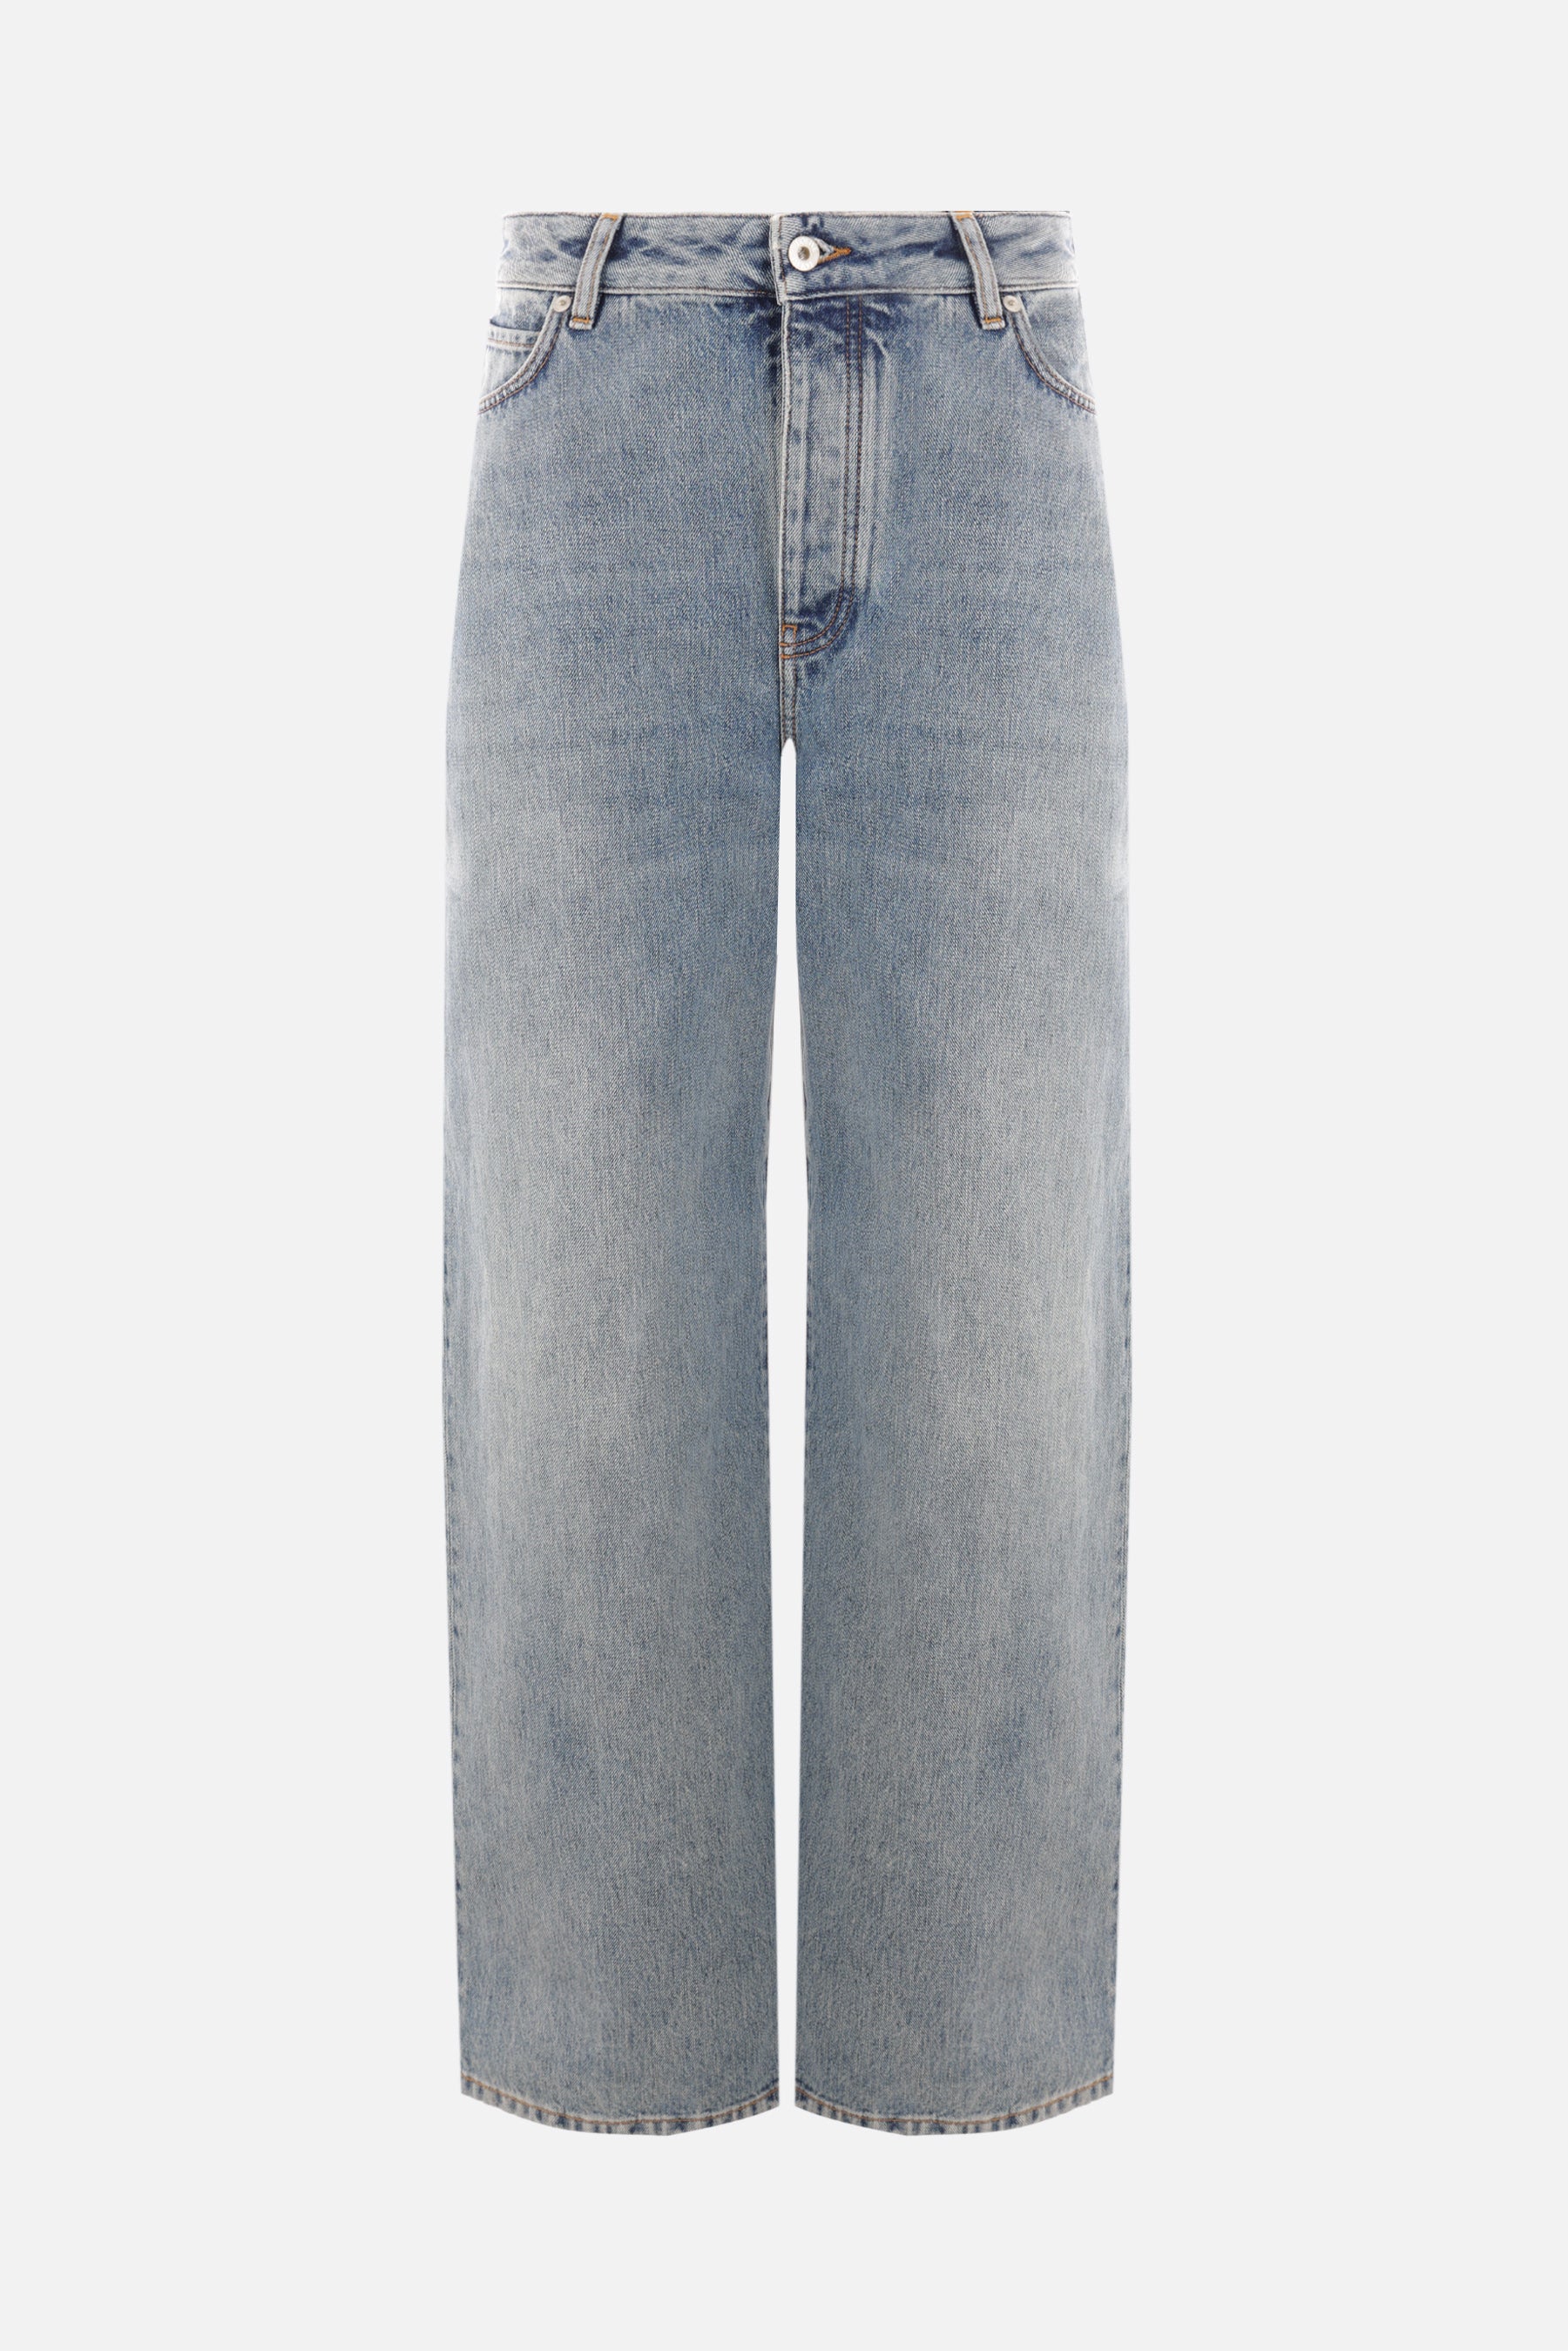 denim high-waisted jeans